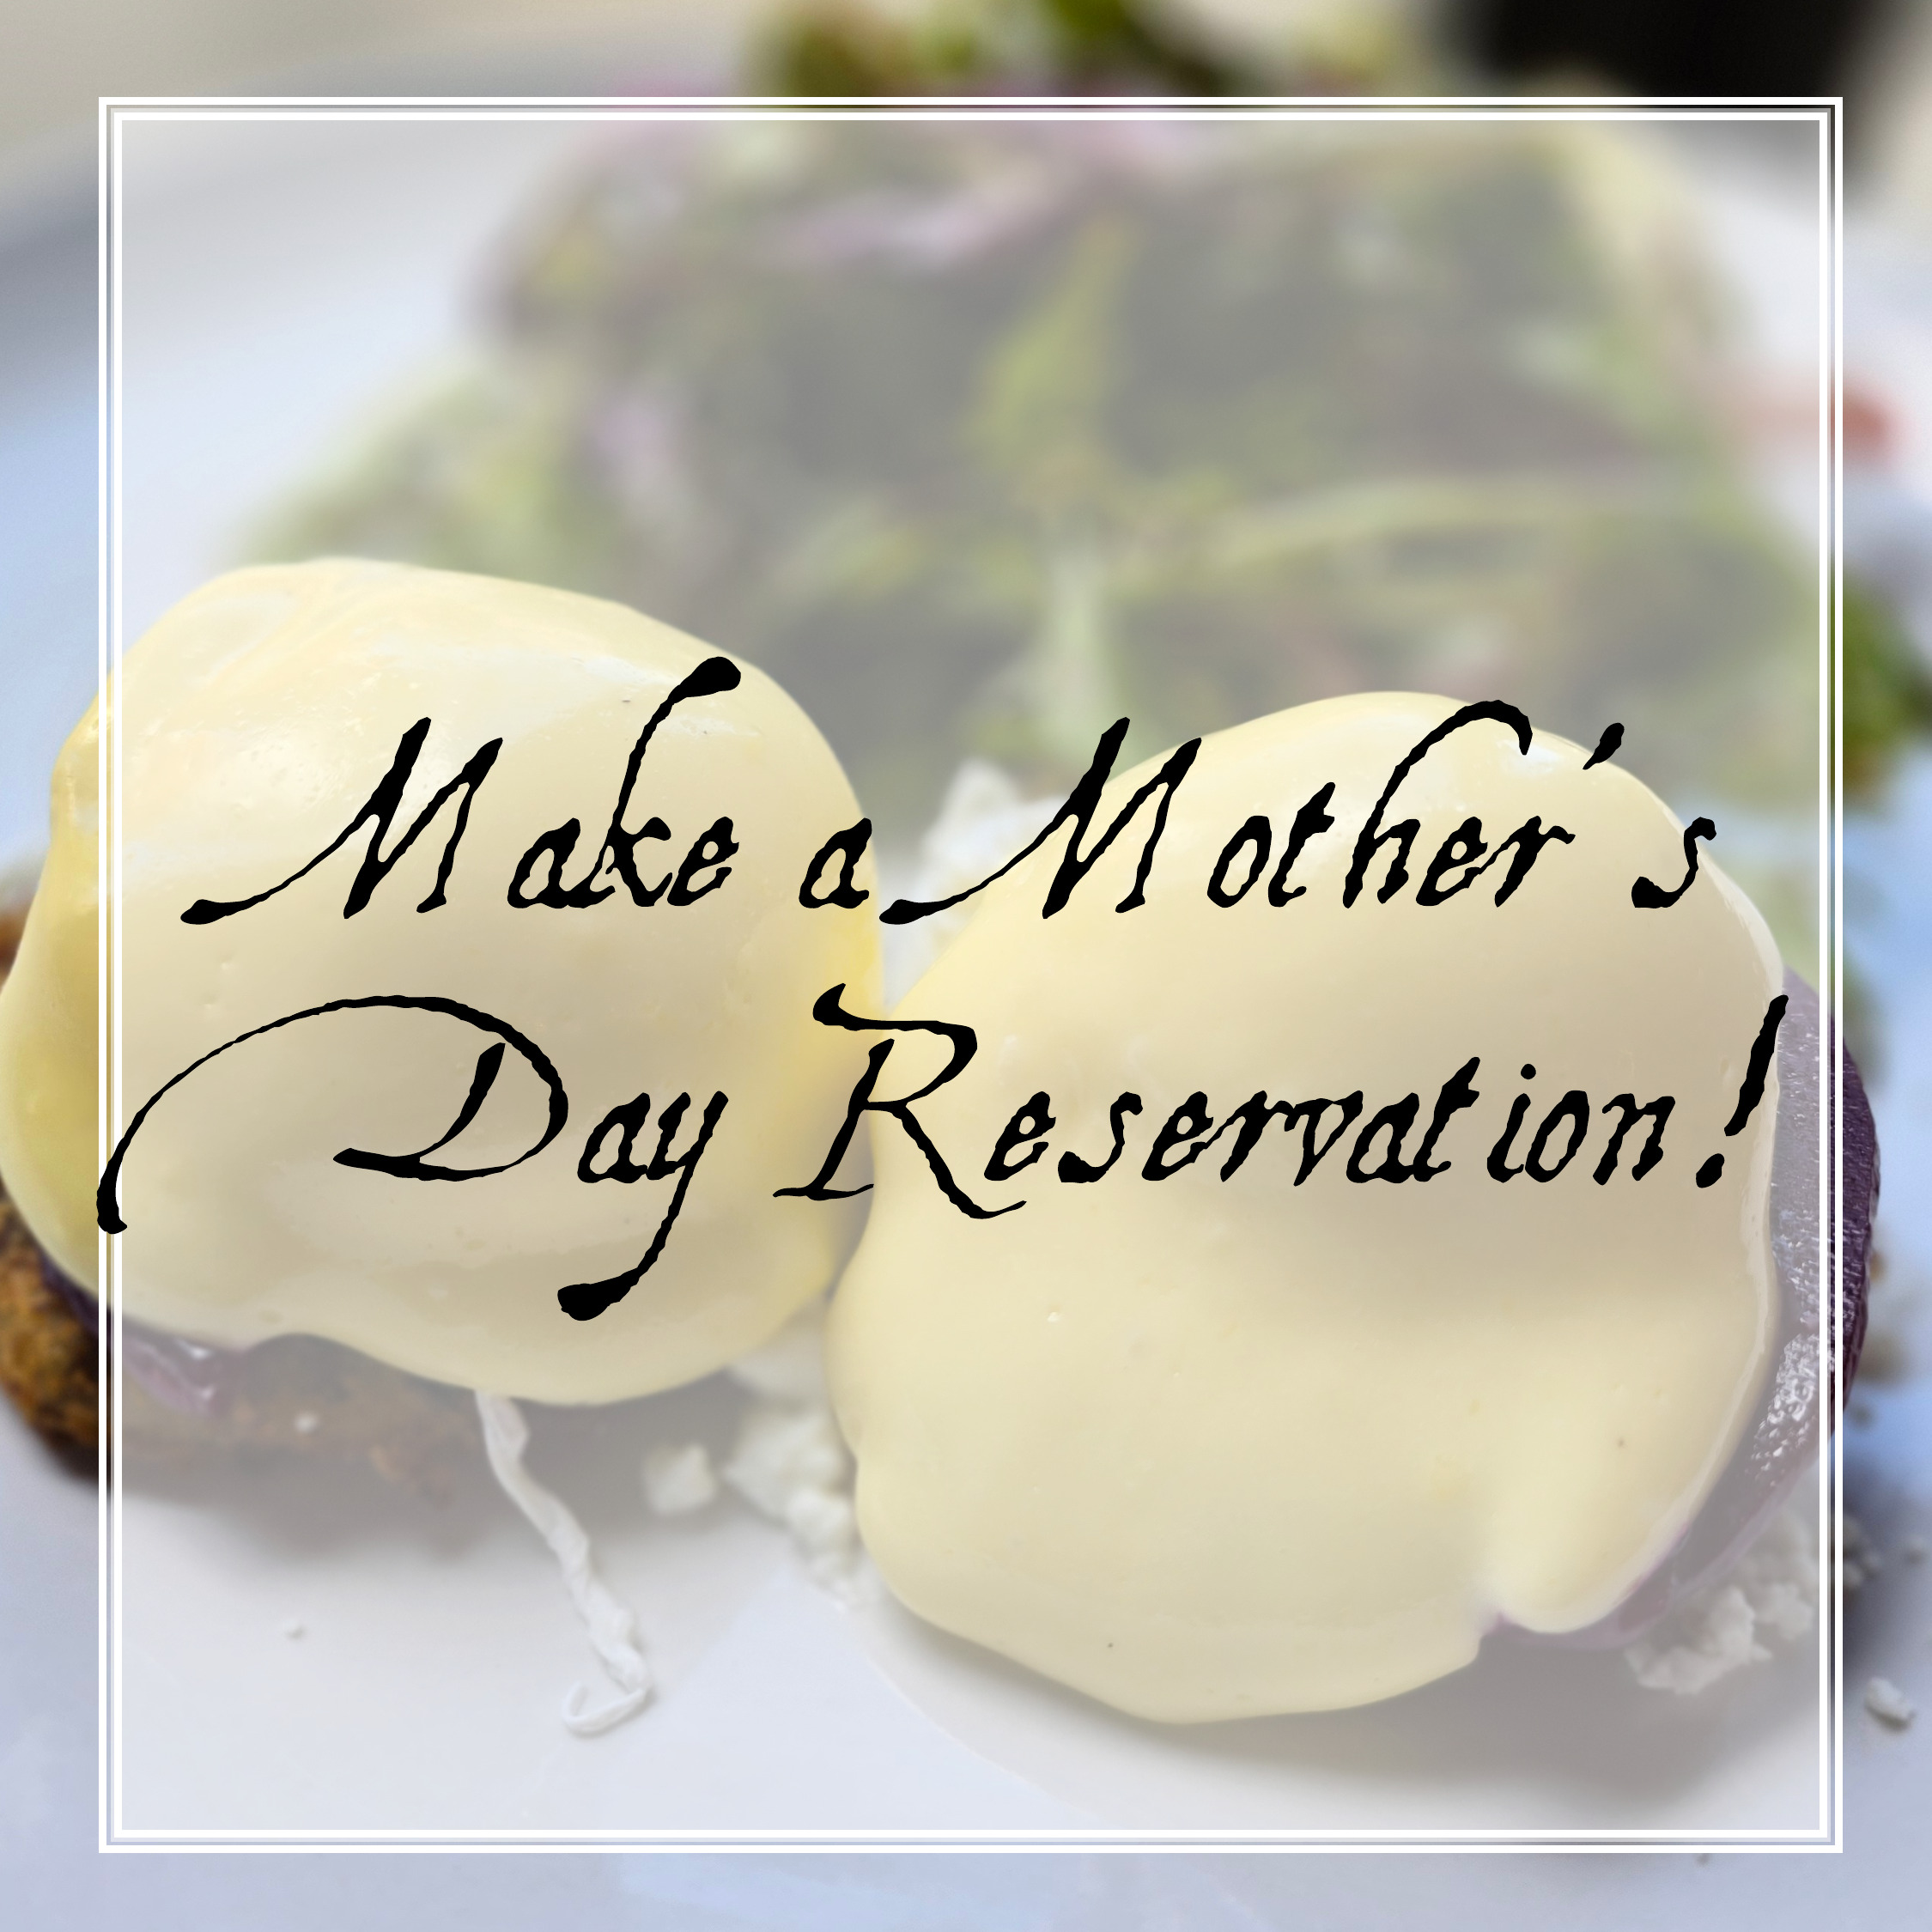 Make a Mother's Day Reservation at Range Restaurant. 